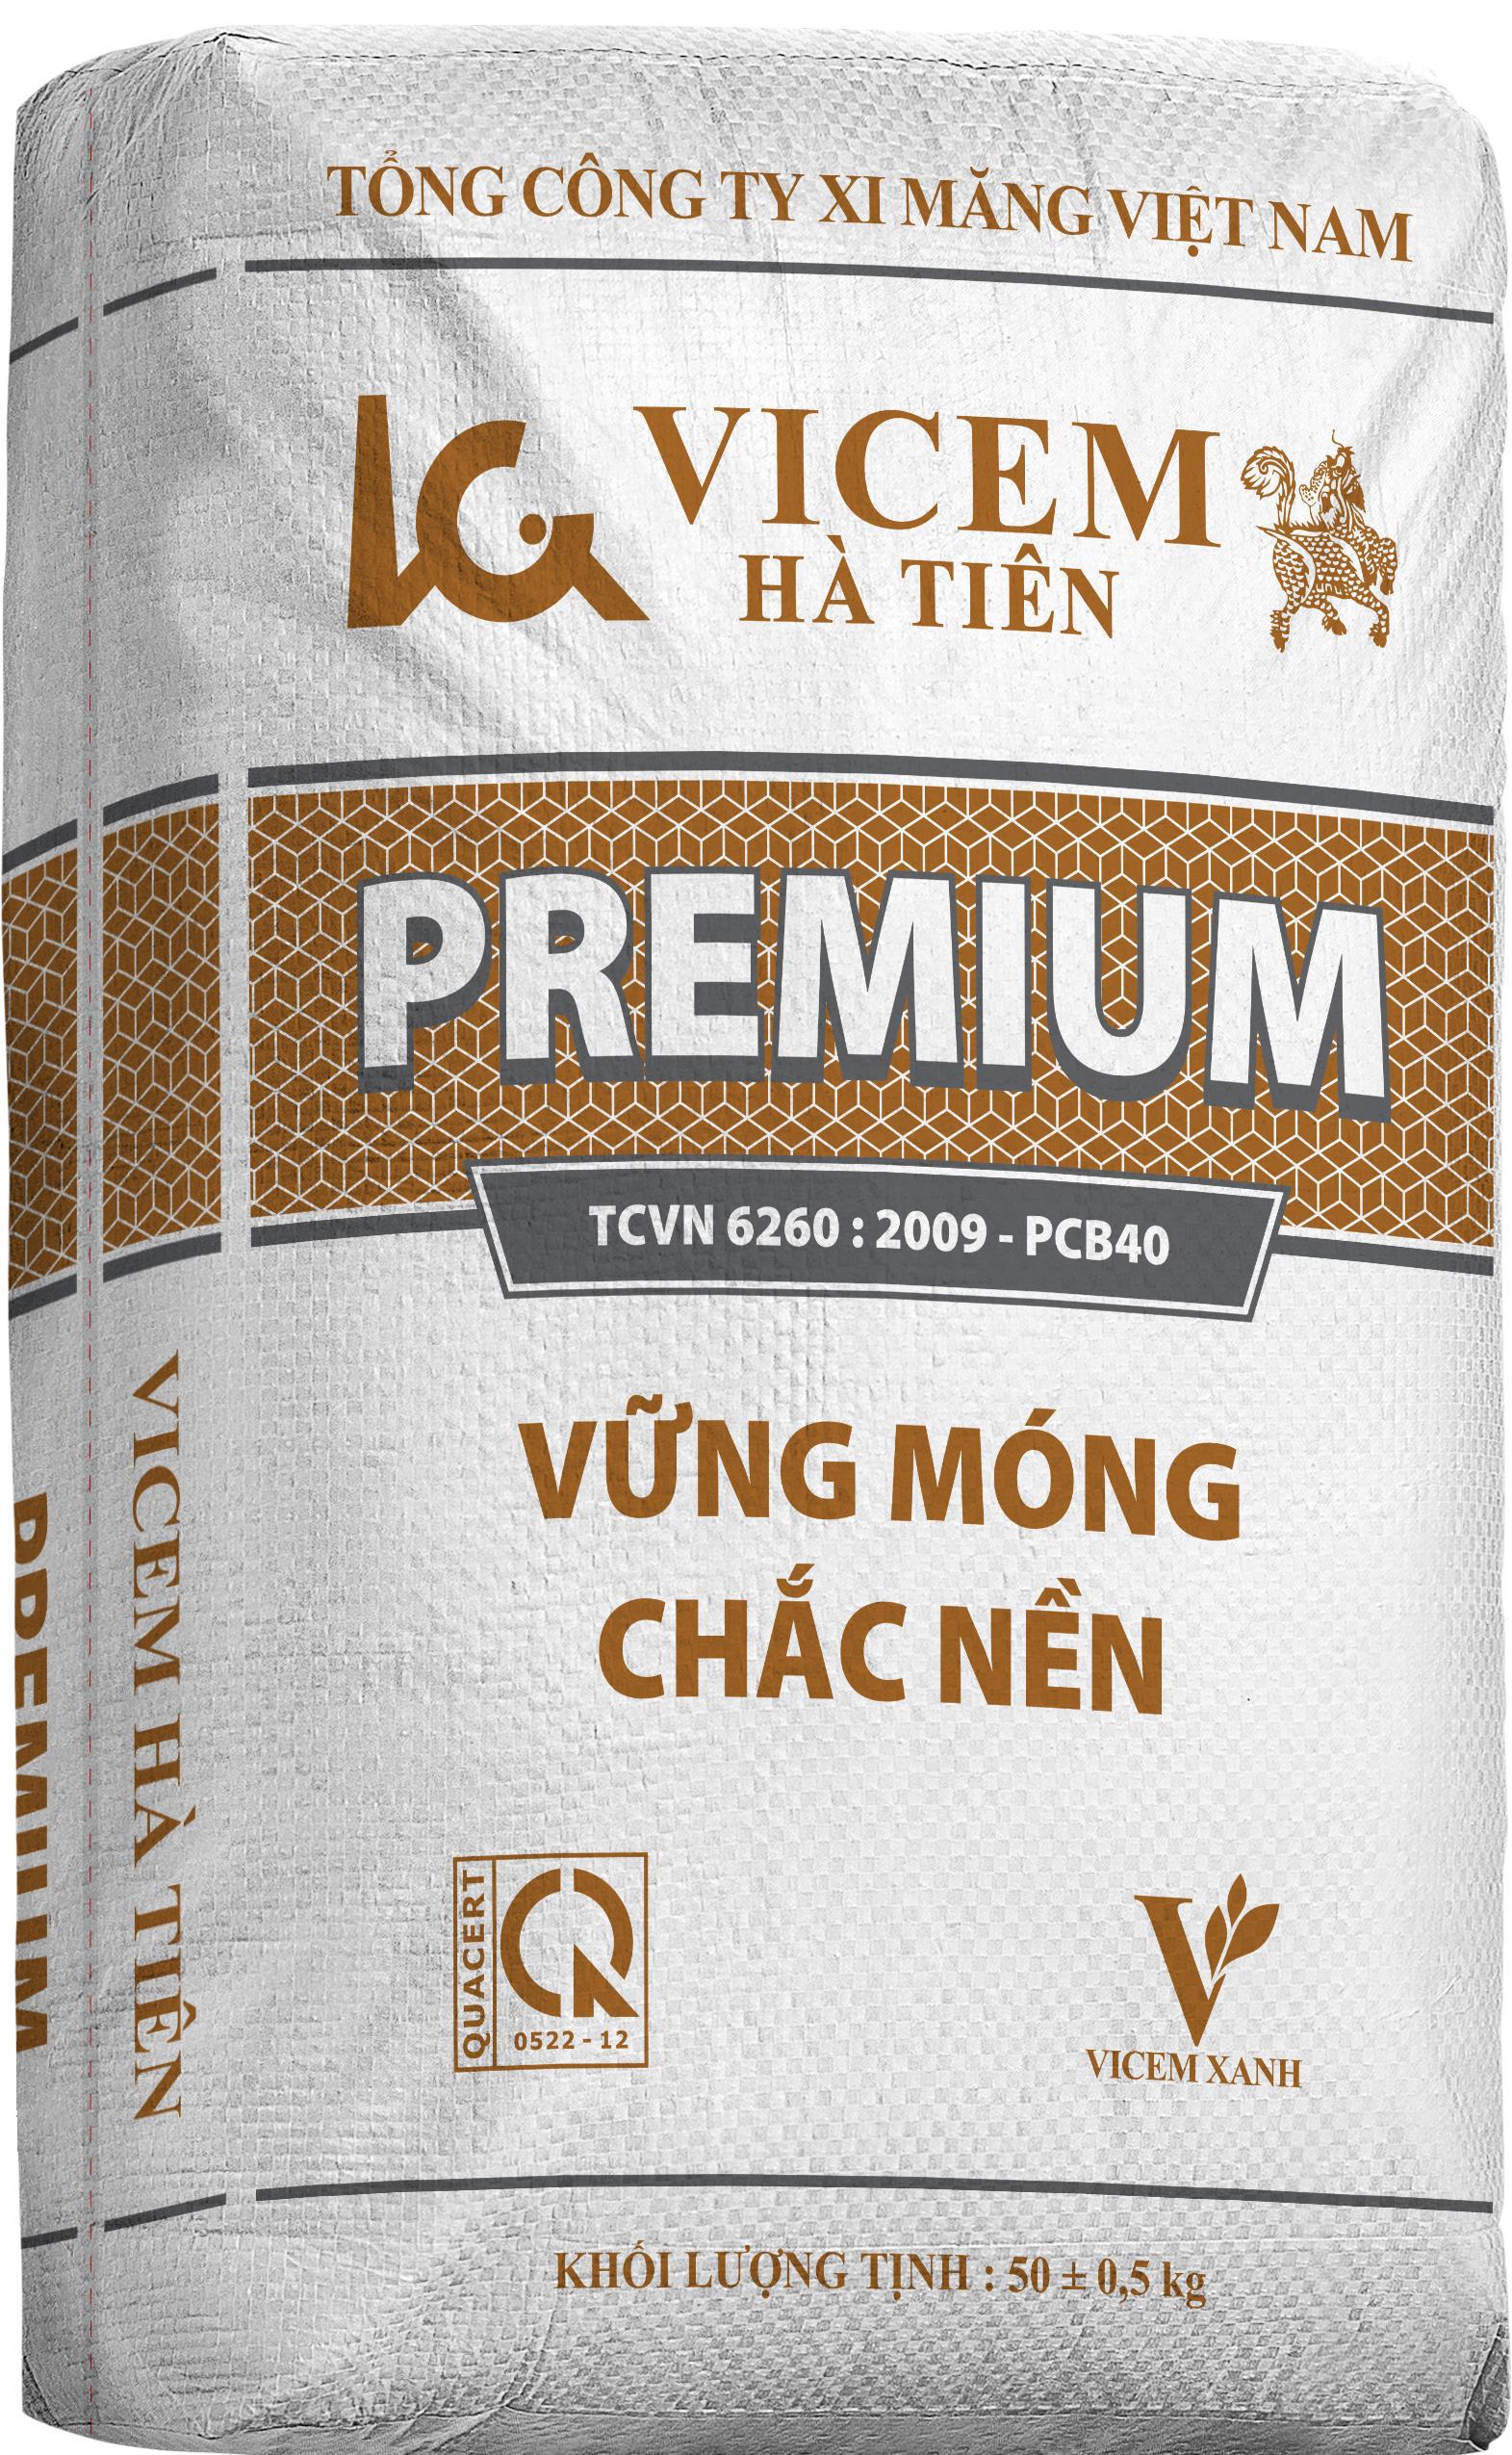 Xi măng Hà Tiên premium